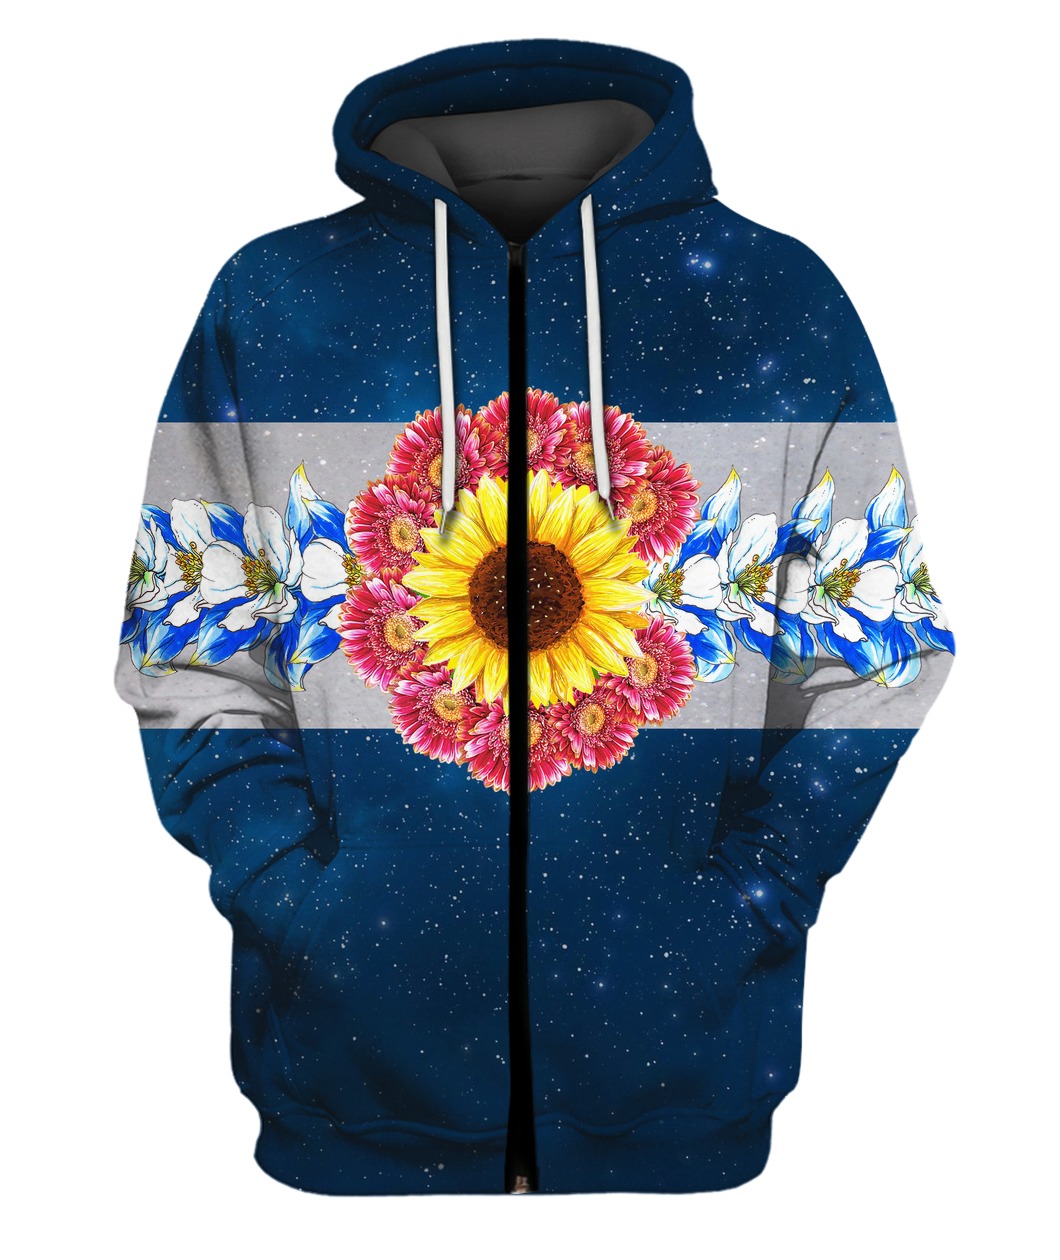 Flower galaxy full printing zip hoodie